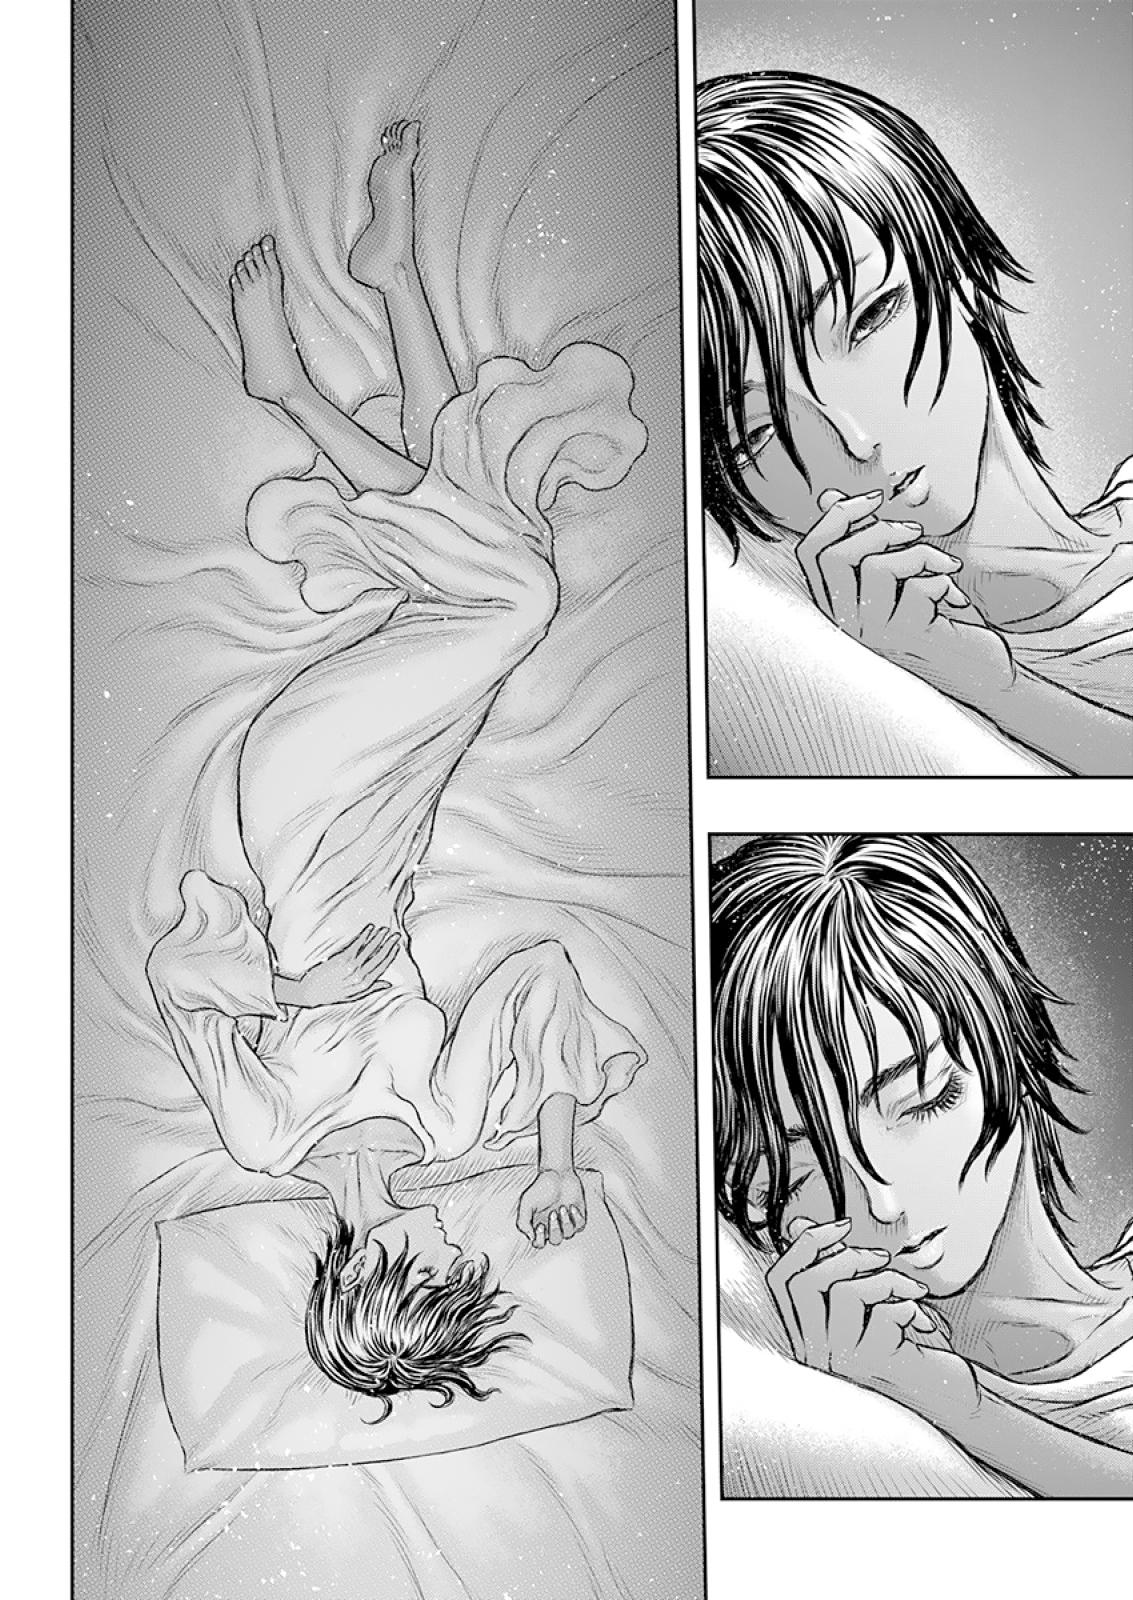 Berserk Manga Chapter 372 image 19